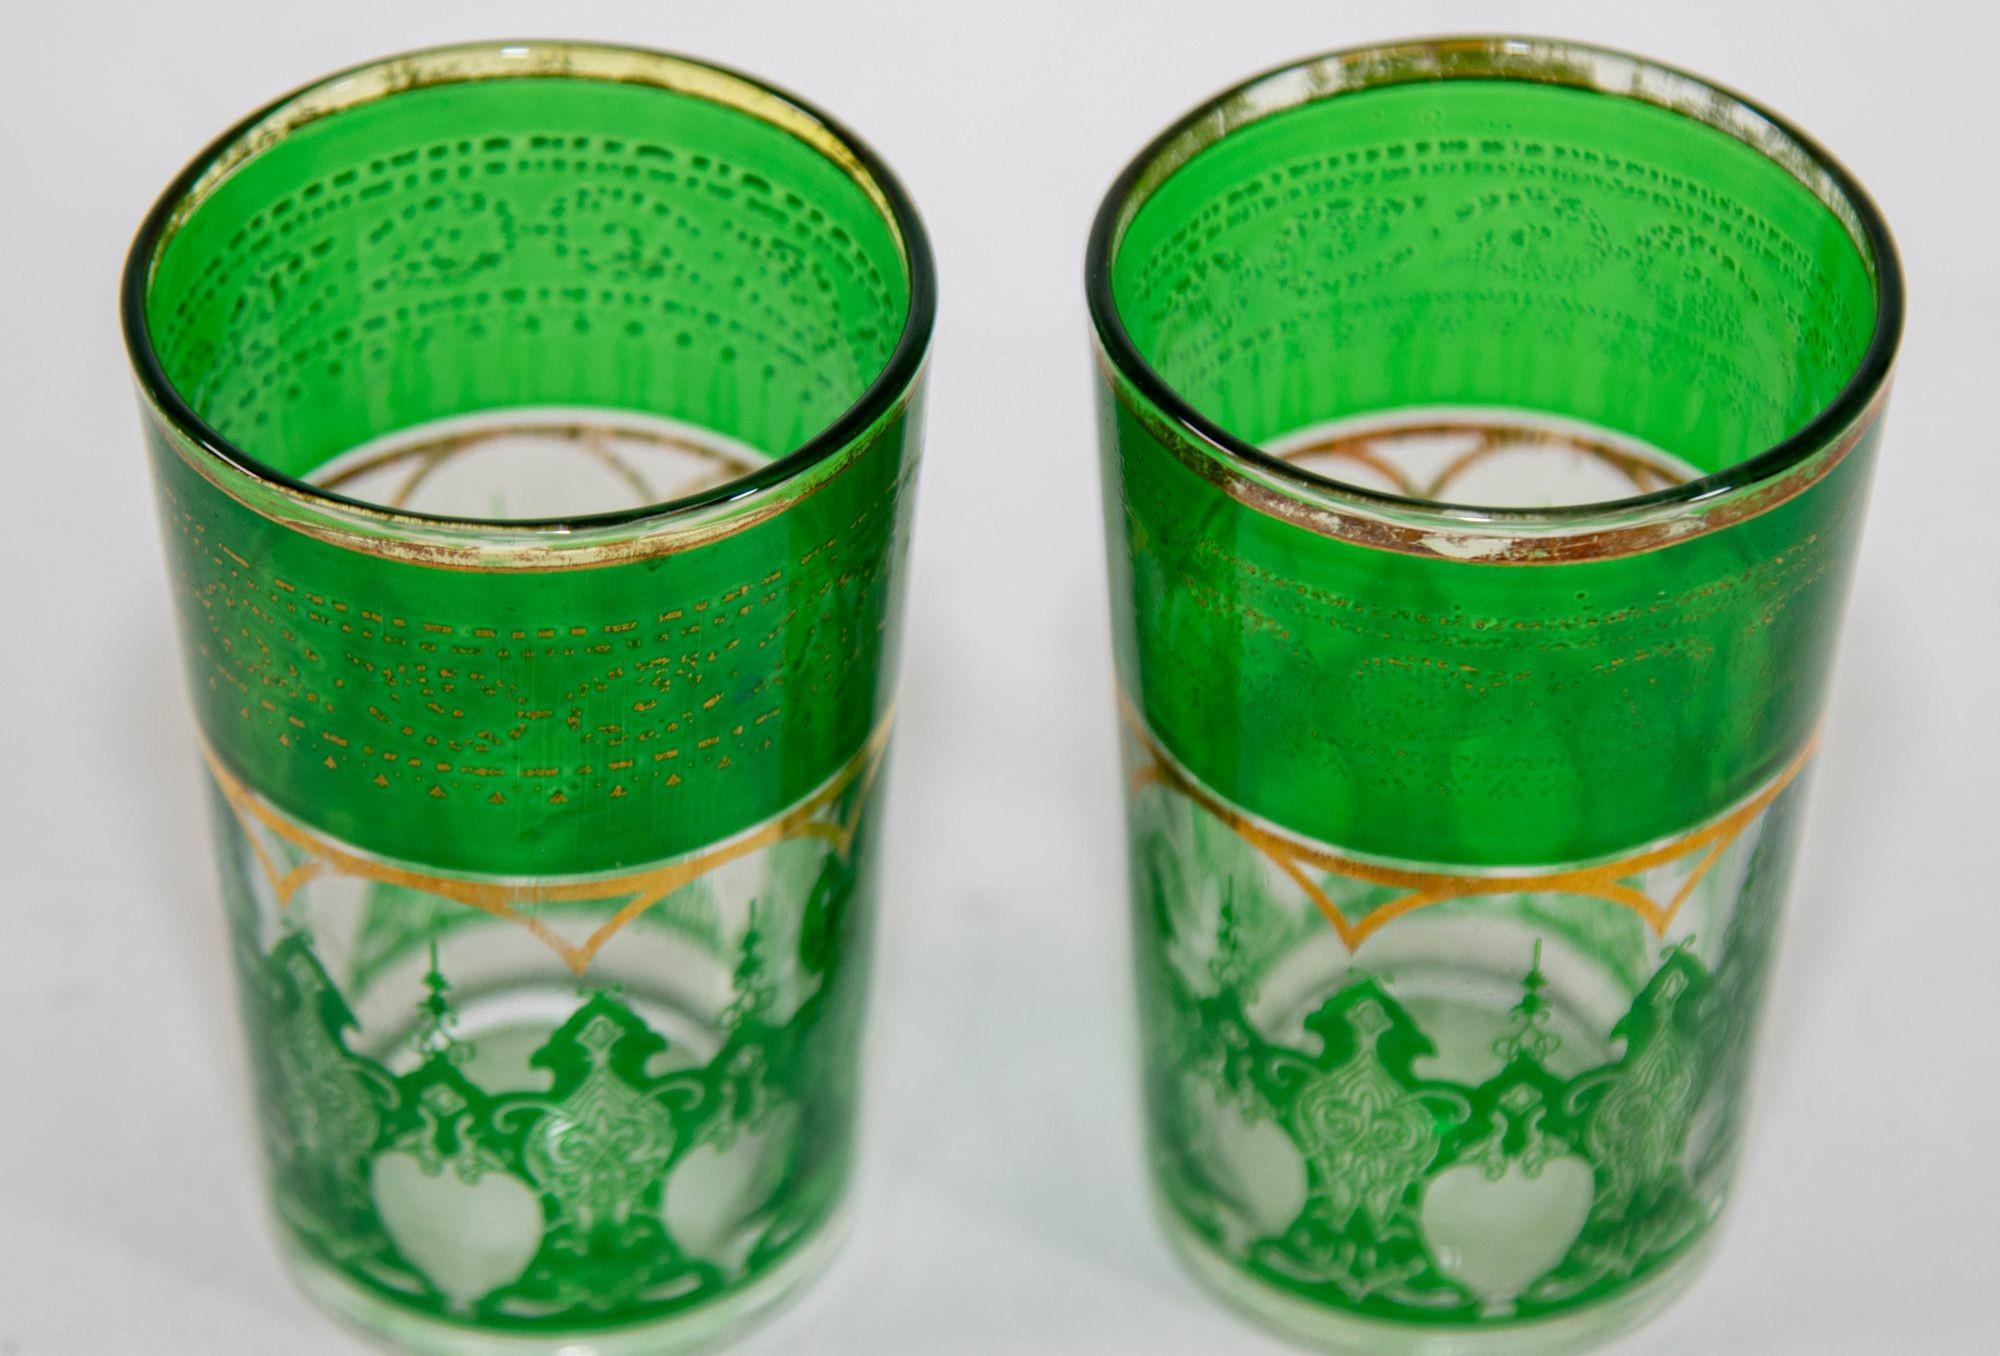 Verres à boire marocains Set de 2 avec design mauresque Vintage Barware.
Ensemble de deux verres marocains vert émeraude avec motif mauresque en relief doré.
Décorée d'une frise mauresque classique à motifs et or.
Utilisez ces élégants verres